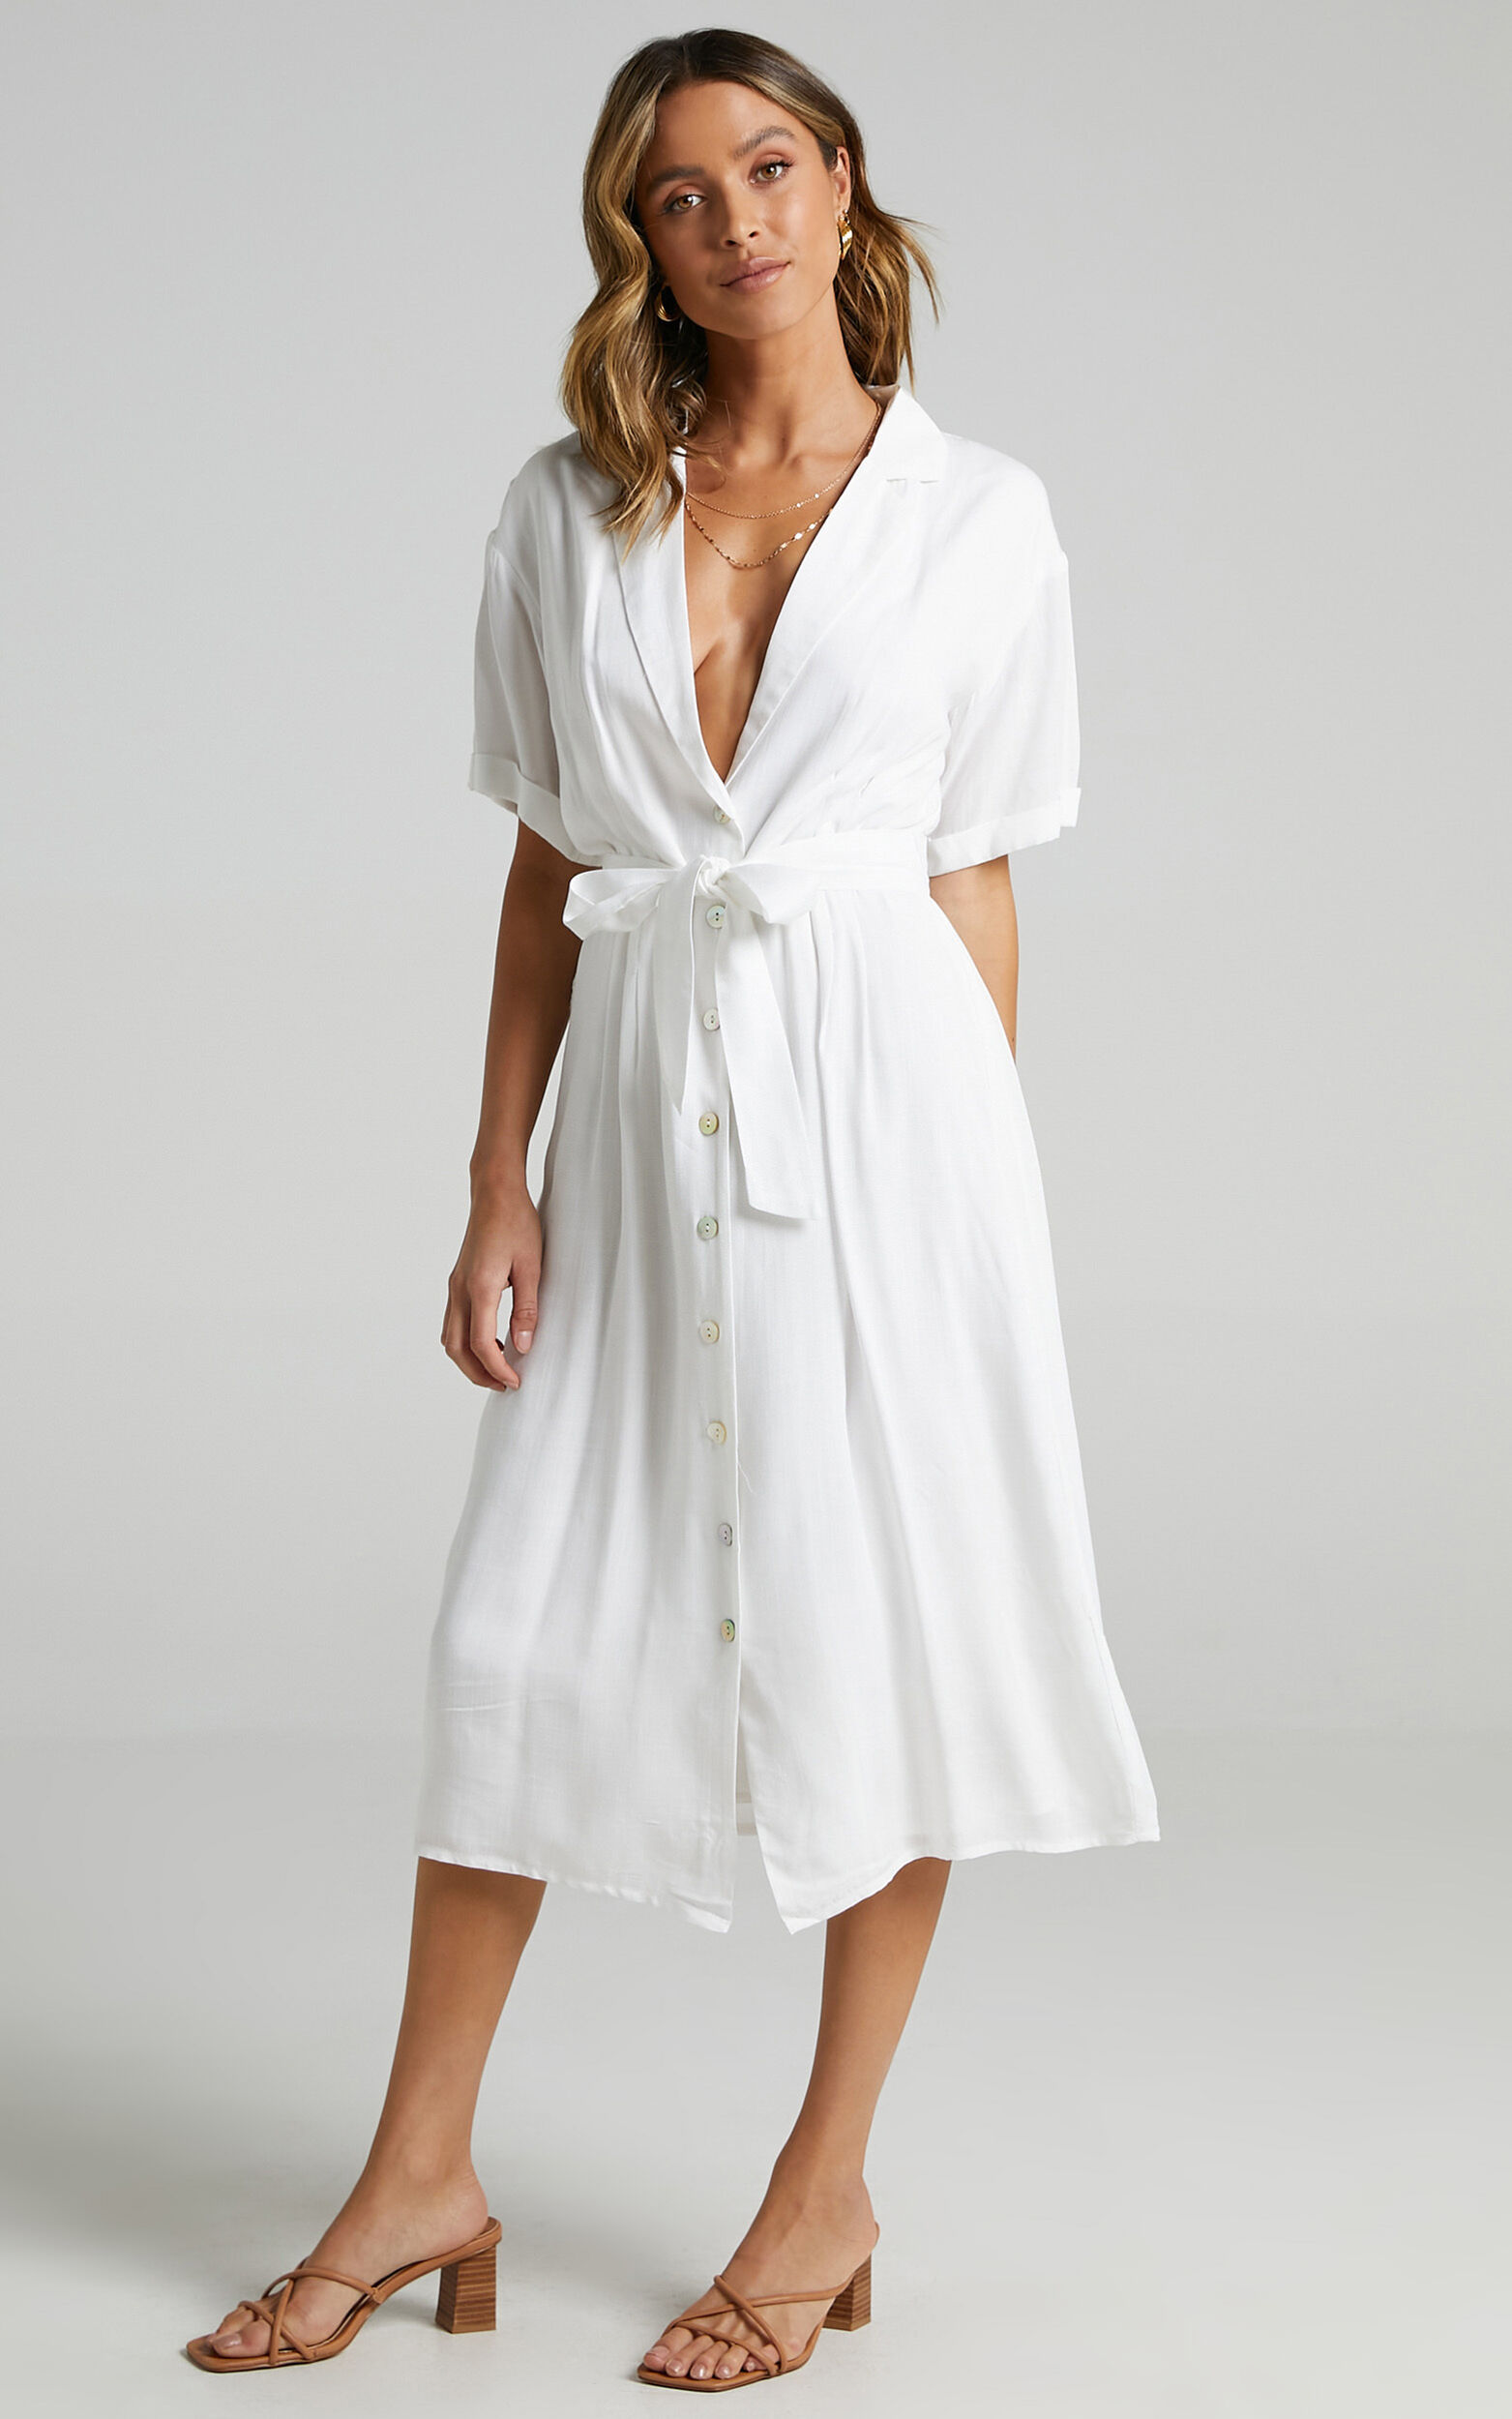 Sallie Dress in White | Showpo